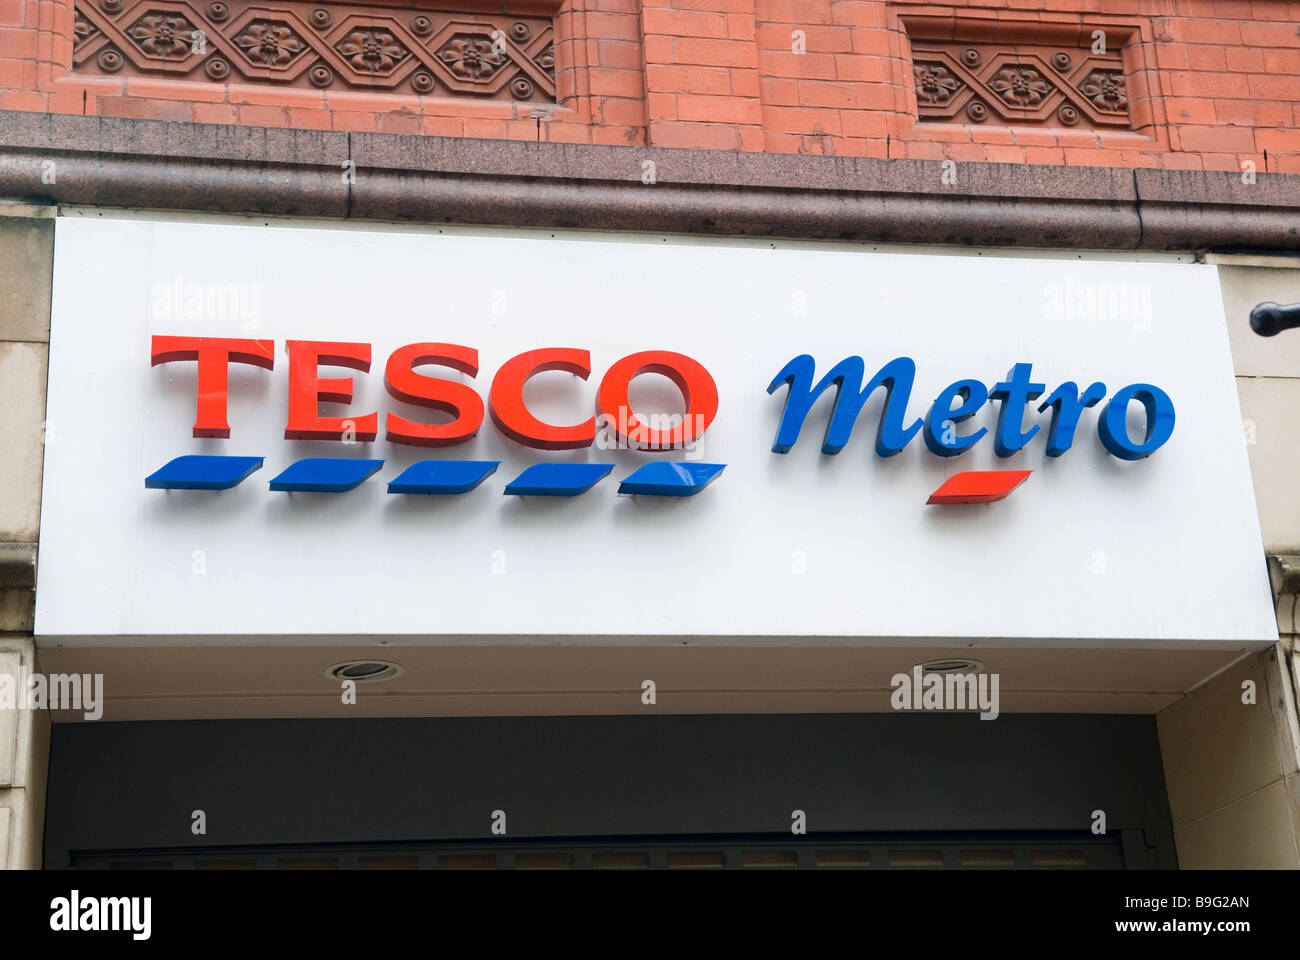 Tesco Metro Manchester city centre UK Stock Photo